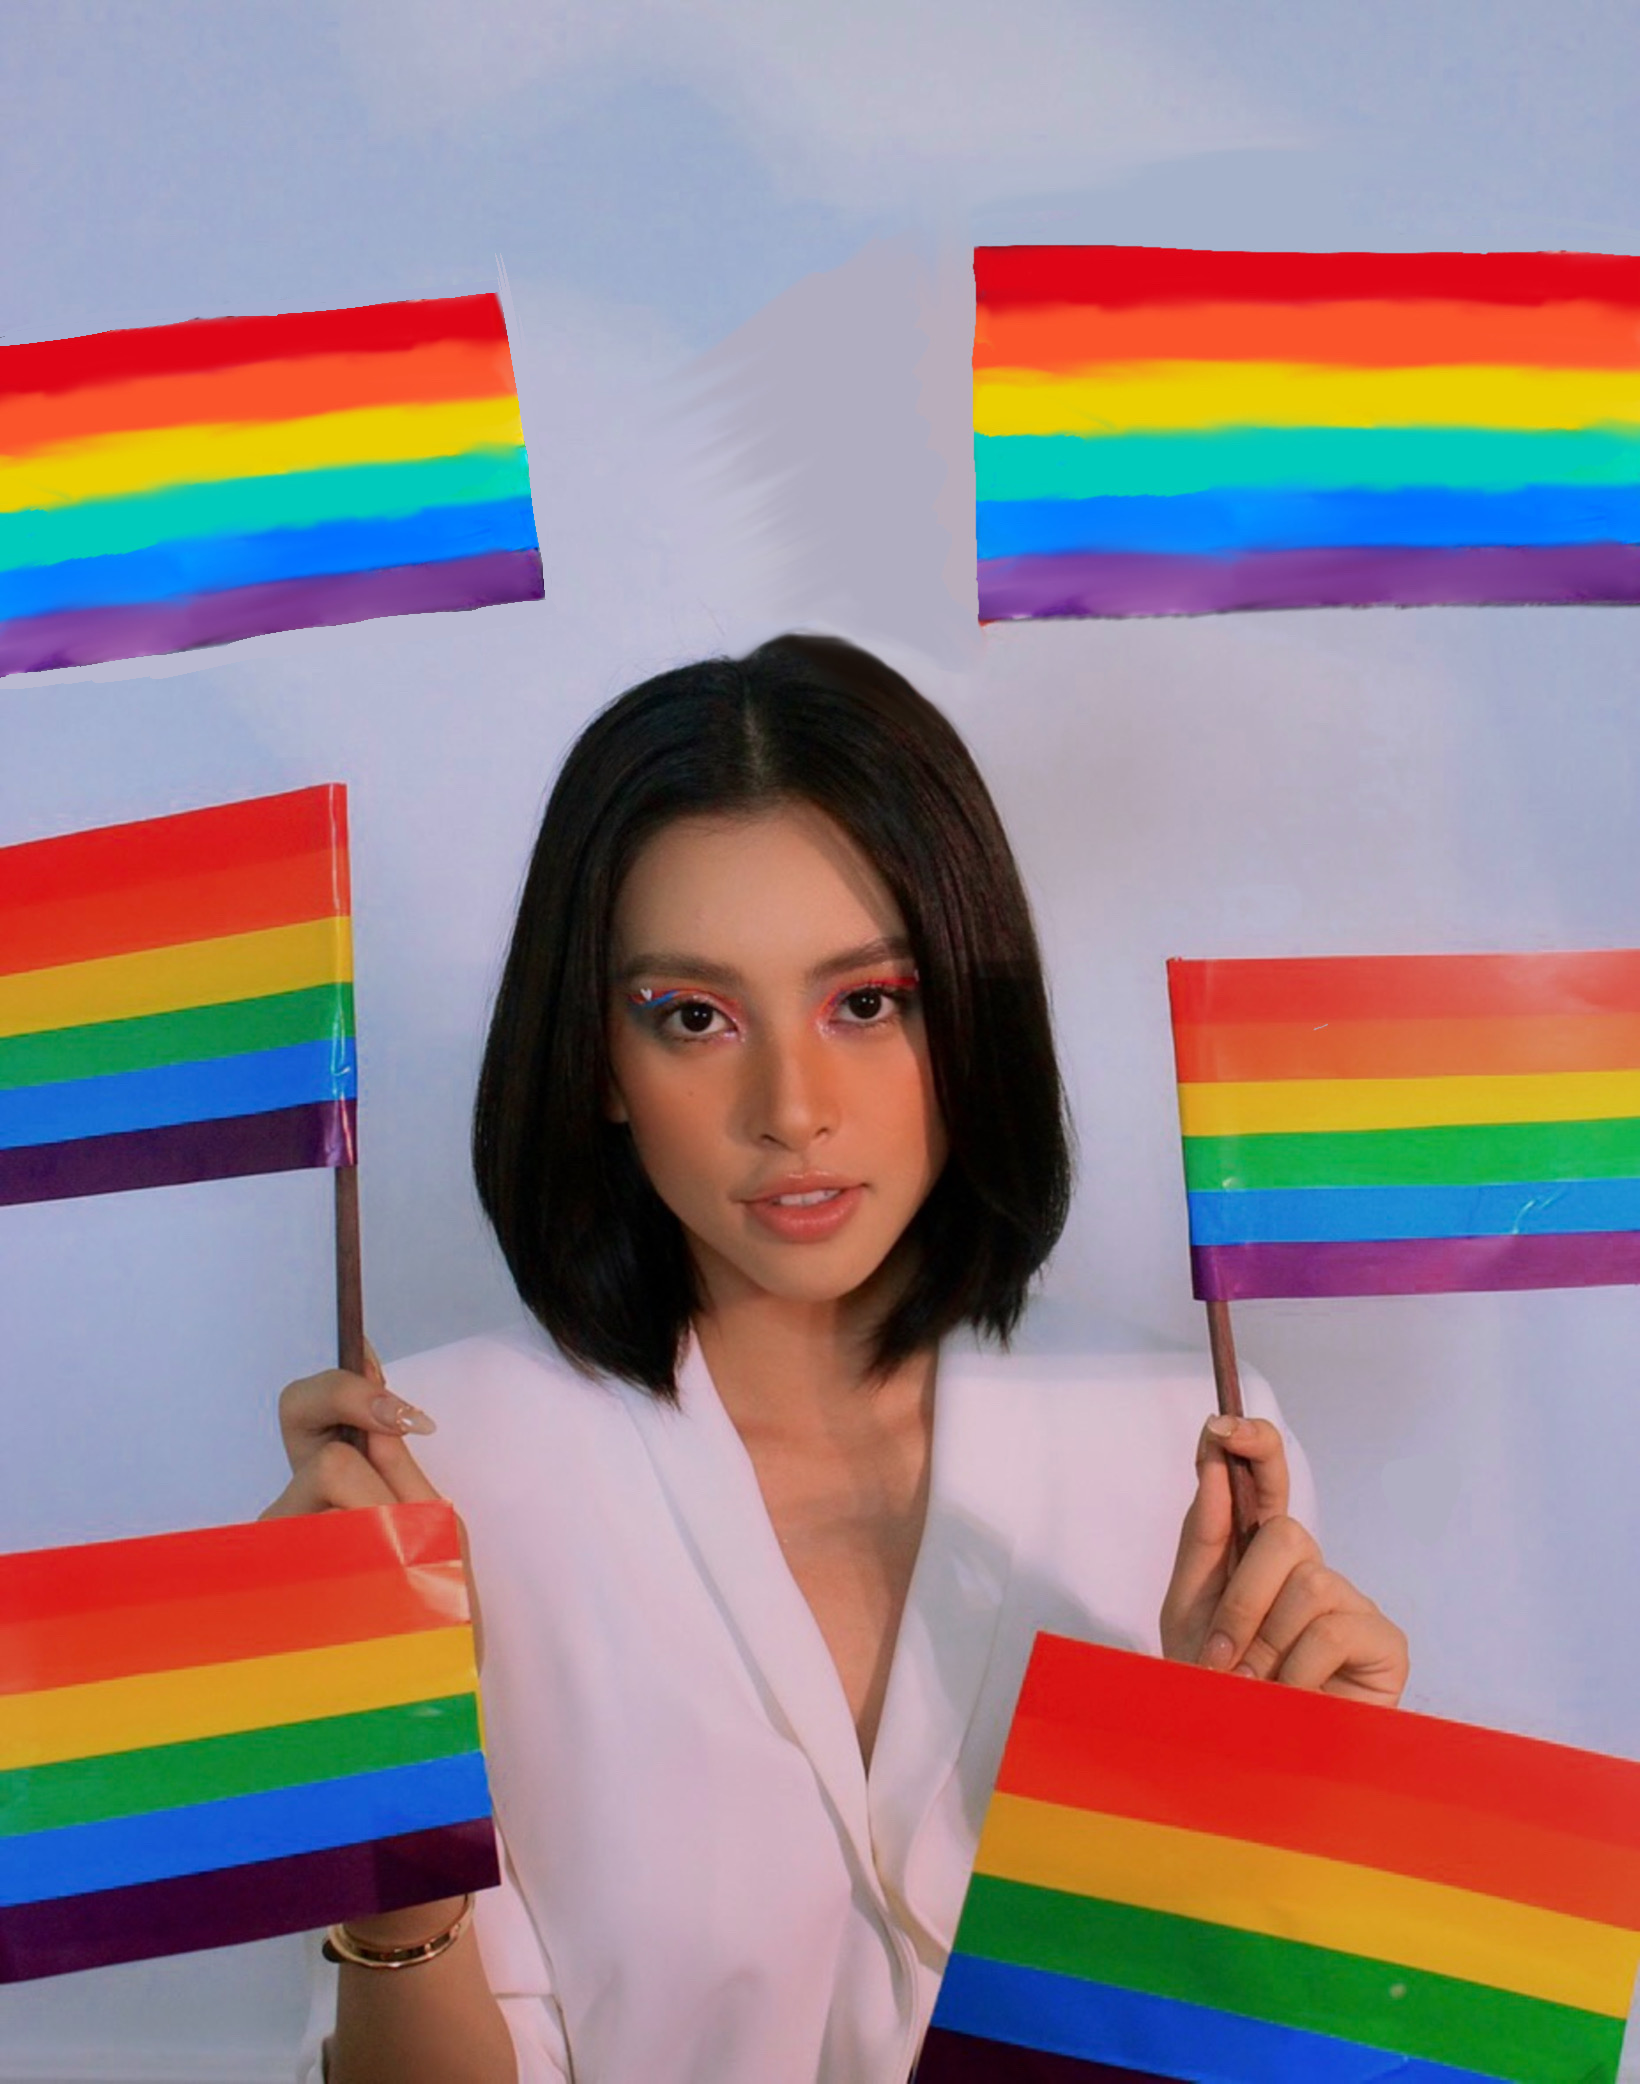 Với bộ ảnh lần này, nàng hậu Tiểu Vy mang đến sự tri ân đặc biệt của mình đến với cộng đồng LGBTQ+. Cụ thể, nàng hậu đã mang đến một hình ảnh vô cùng độc lạ khi tổng thể tất cả bức ảnh đều được chỉnh với tone màu trắng đen.